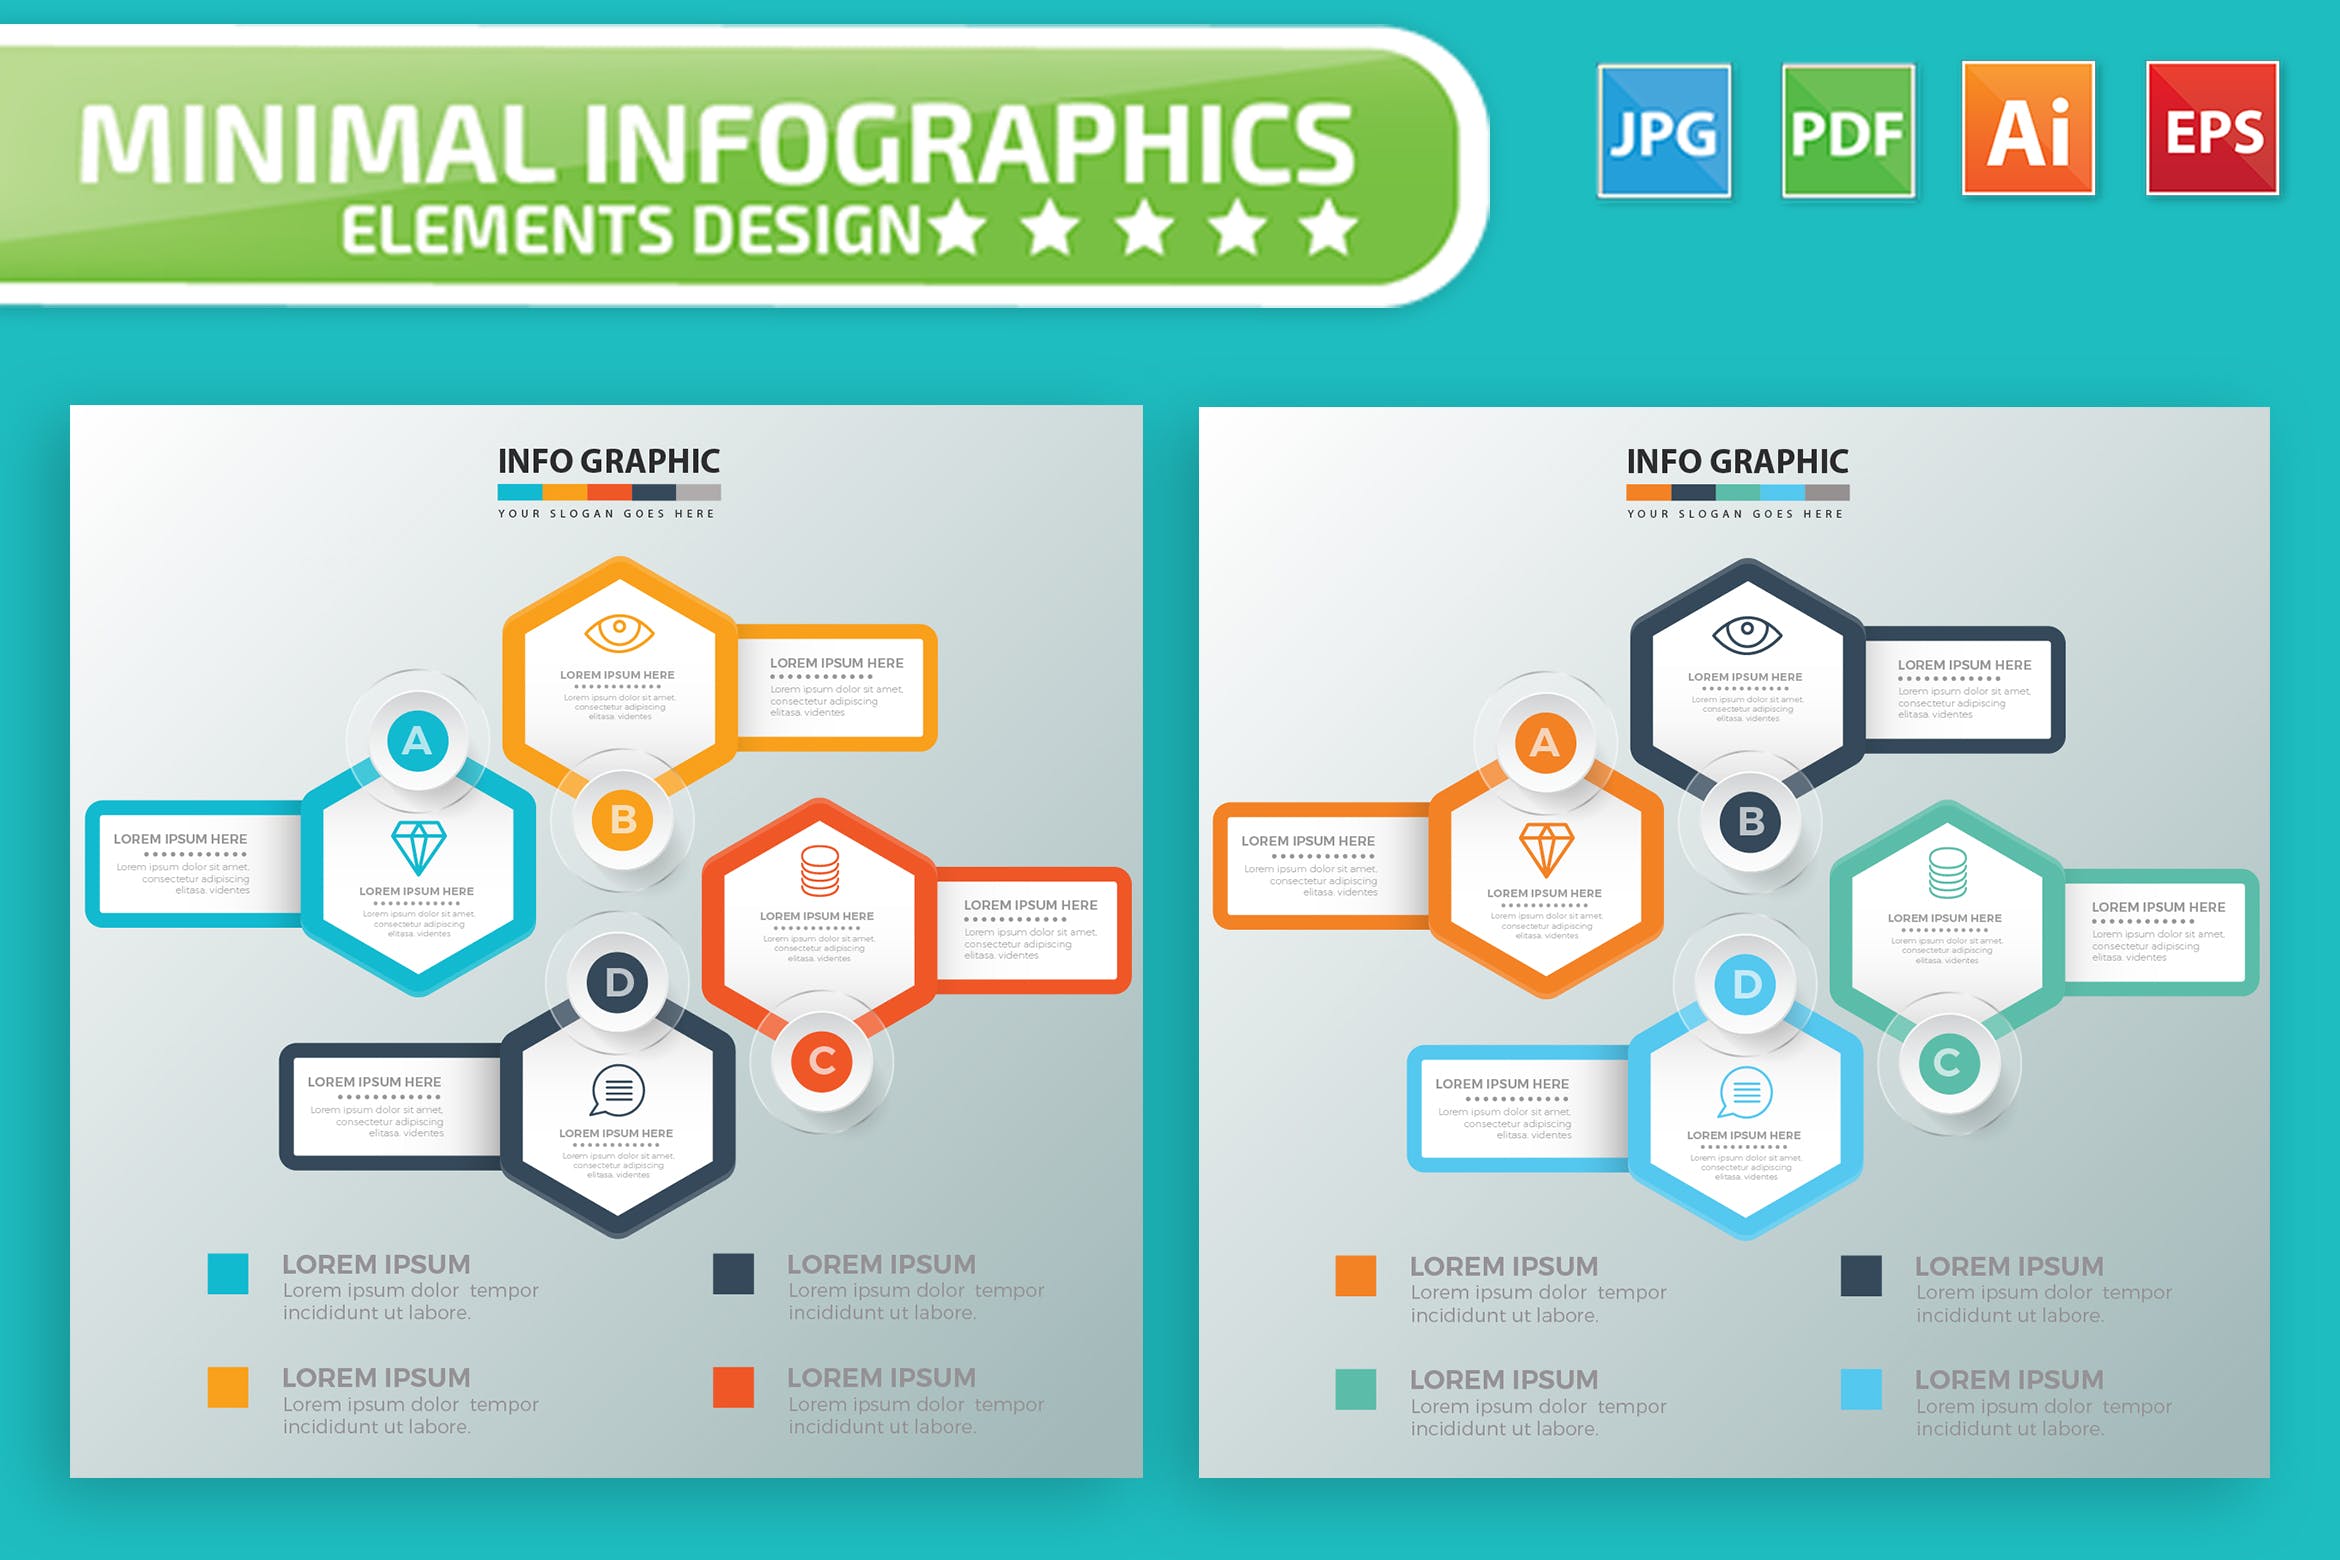 要点说明/重要特征信息图表矢量图形素材天下精选素材v7 Infographic Elements Design插图